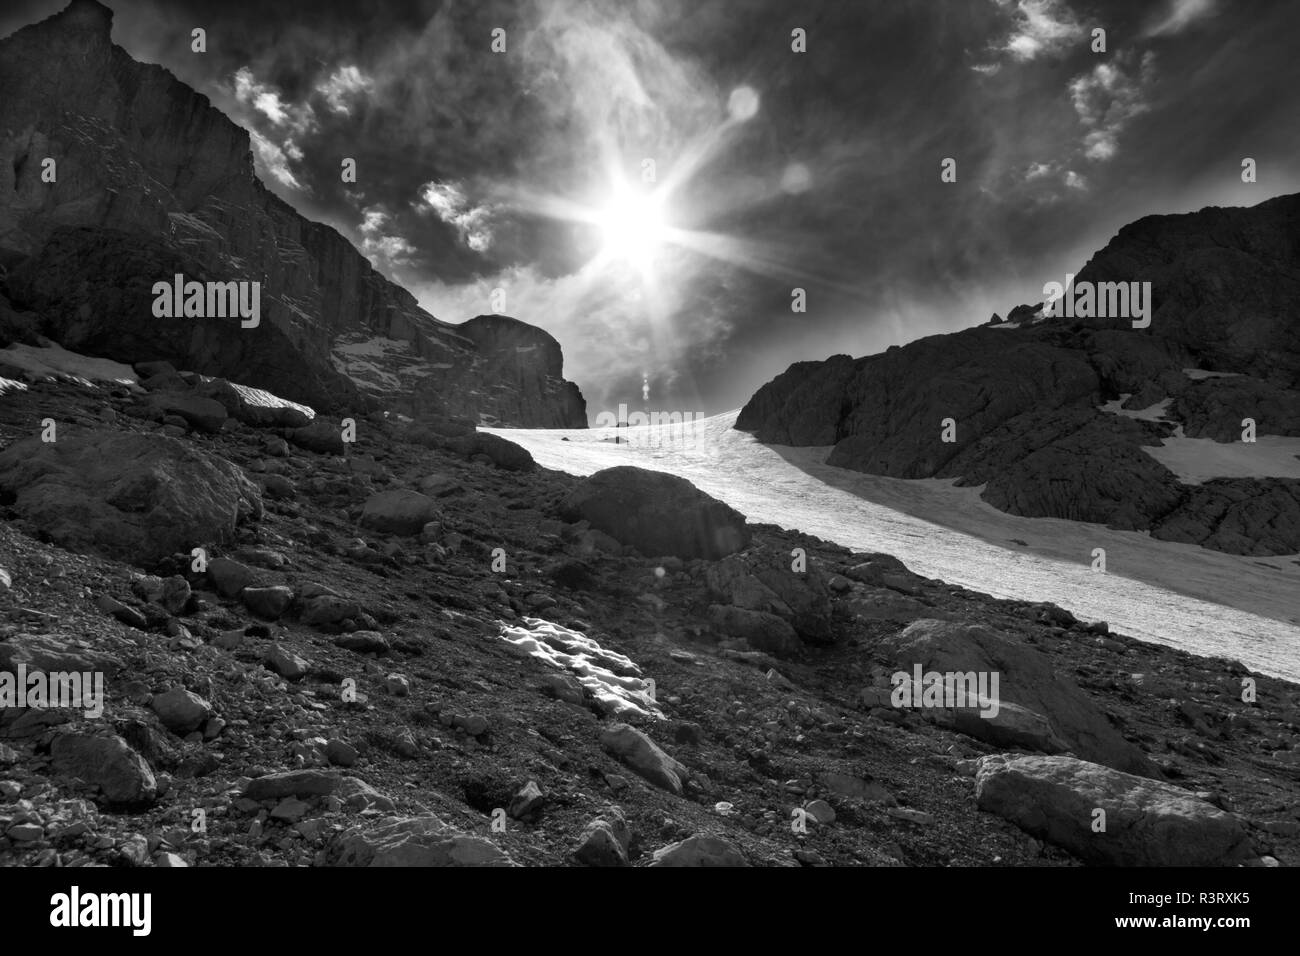 Le col de montagne de neige et ciel avec soleil et rayons de soleil. La Turquie, Monts Taurus centrale, Aladaglar (Anti-Taurus). Paysage aux tons noir et blanc. Banque D'Images